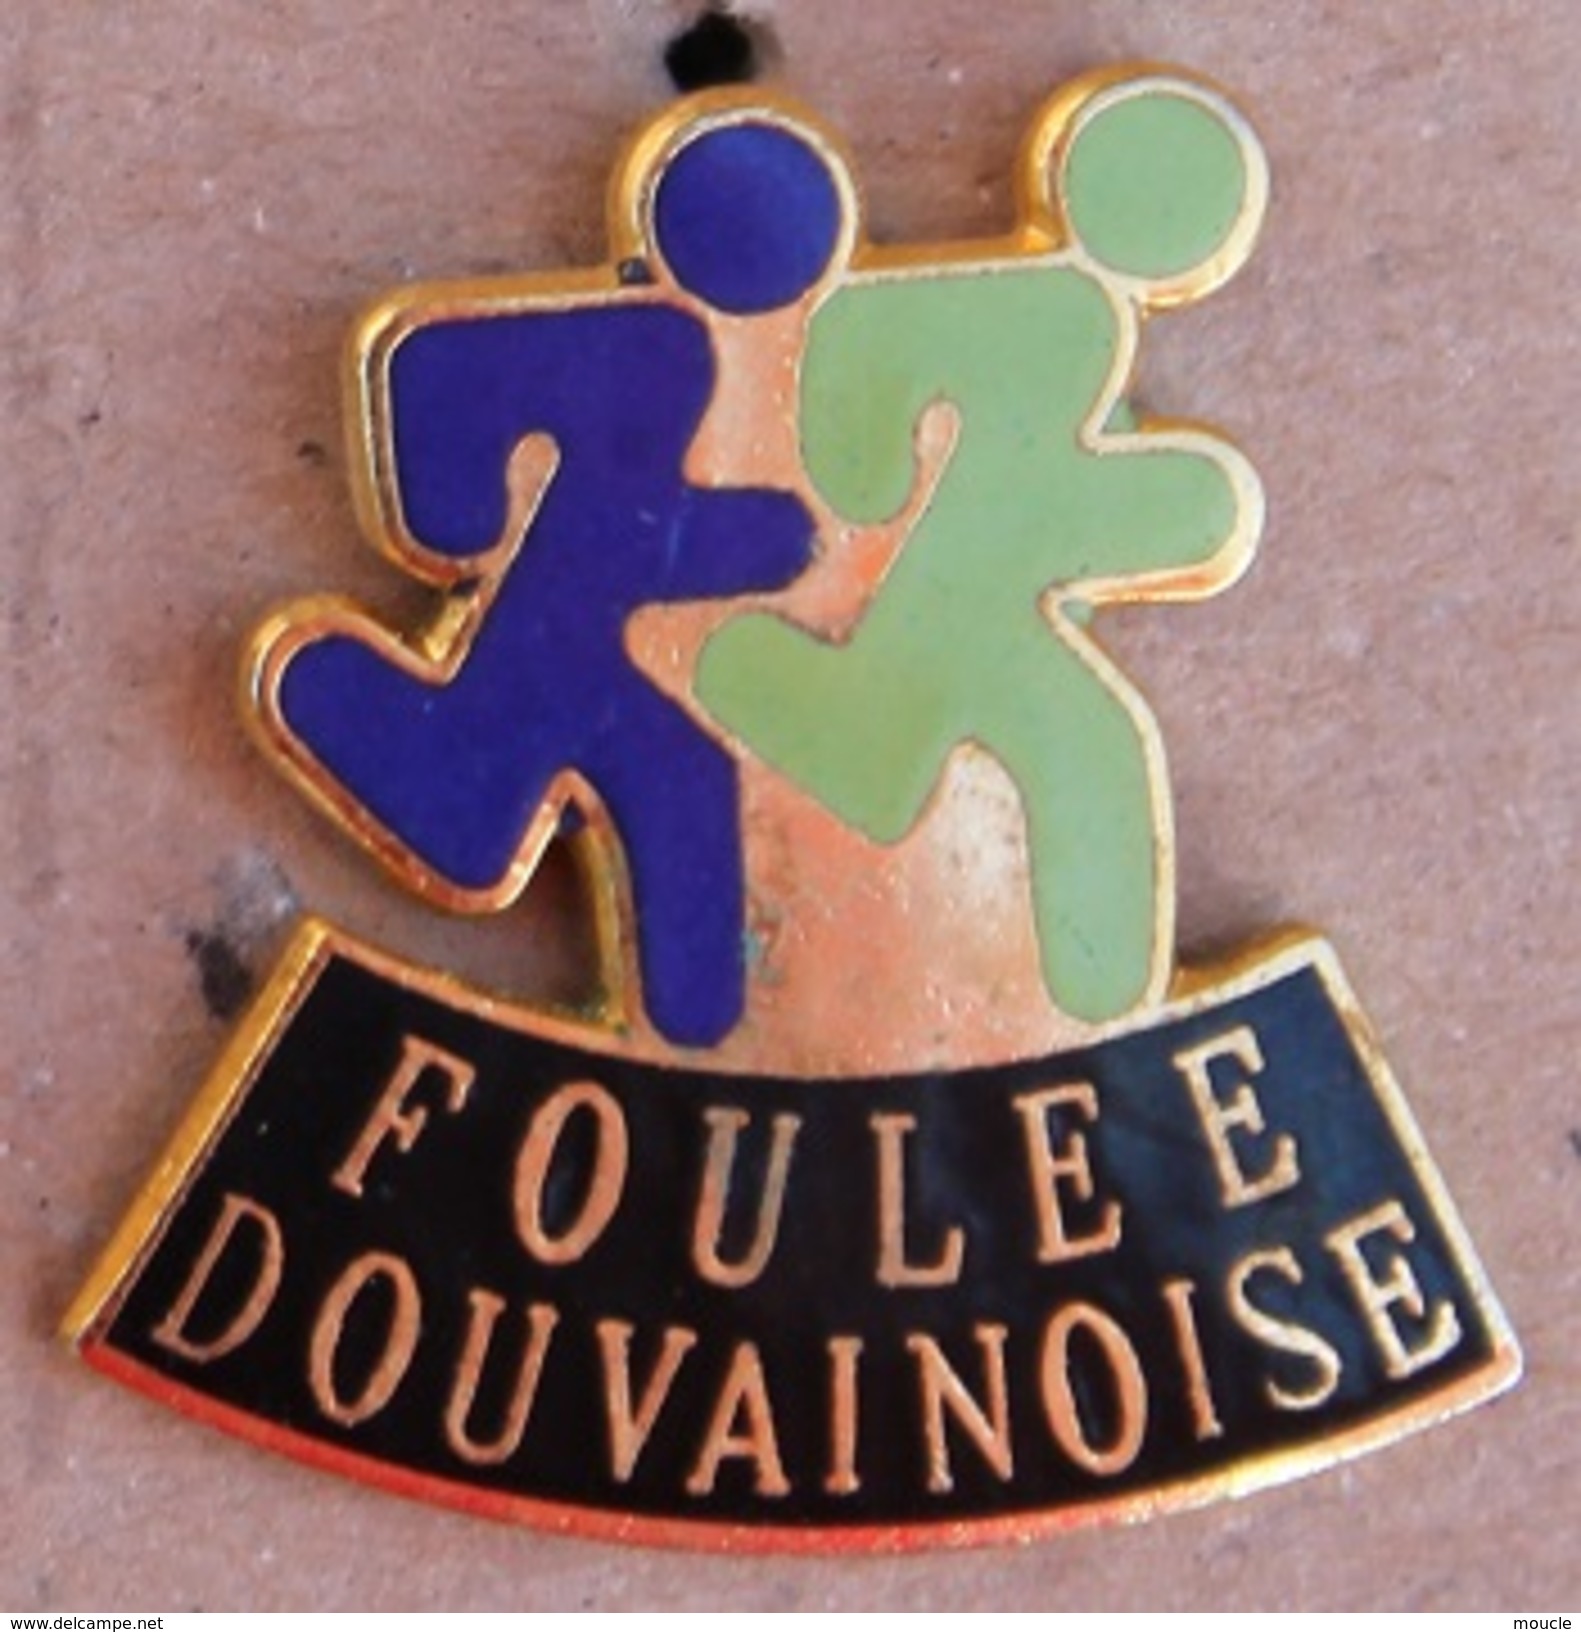 FOULEE DOUVAINOISE - DOUVAINE - COUREURS -    (17) - Athletics